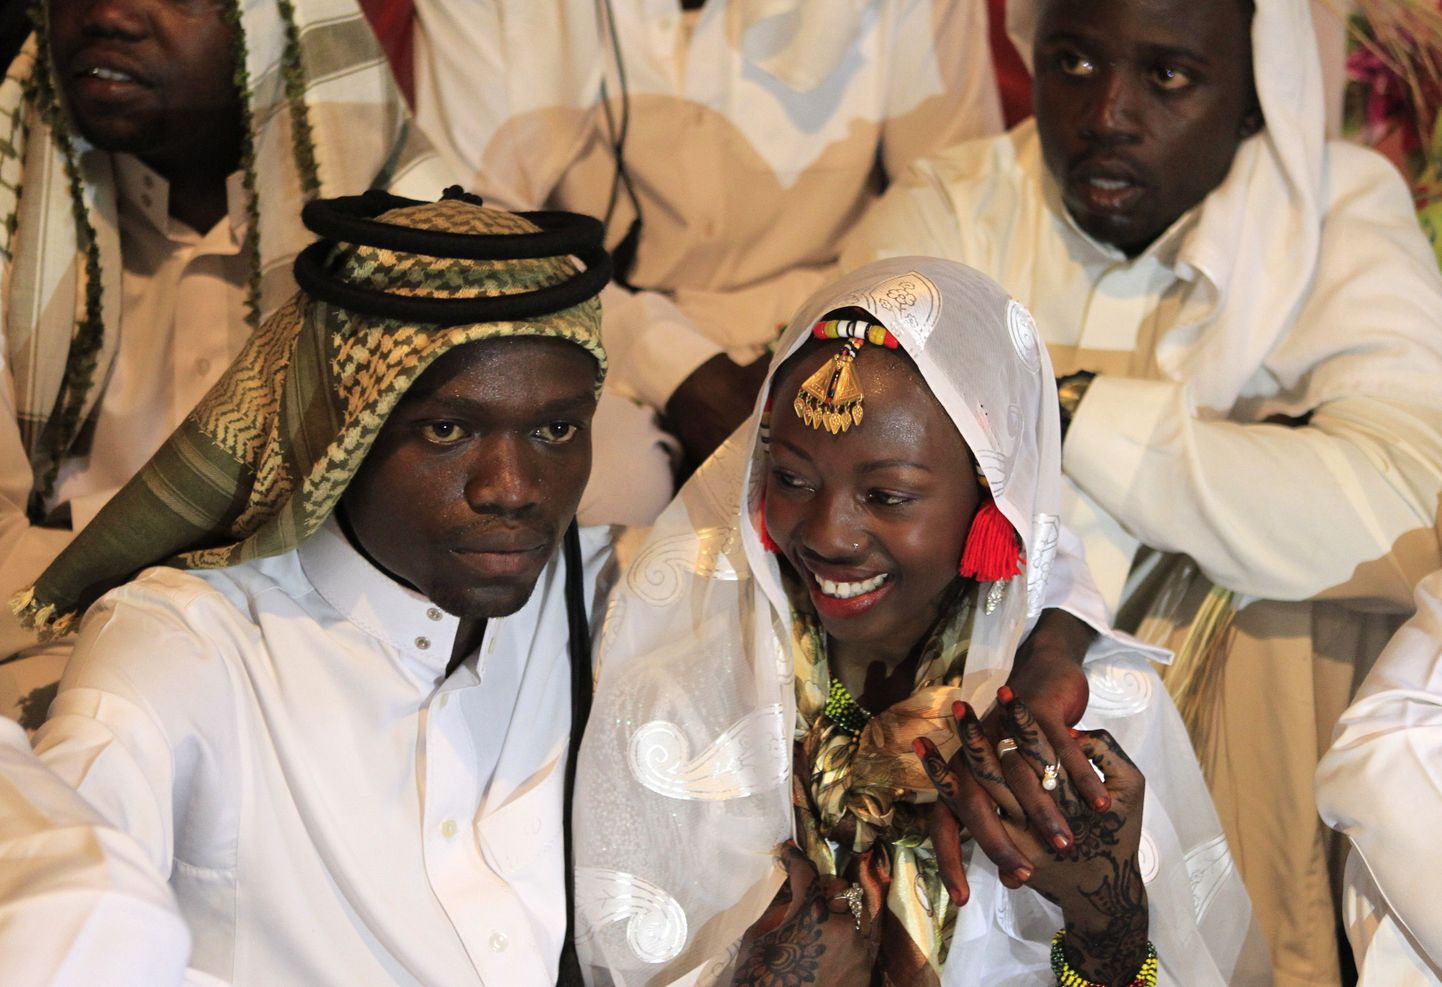 Keenias said mehed ametlikult loa mitmenaisepidamiseks